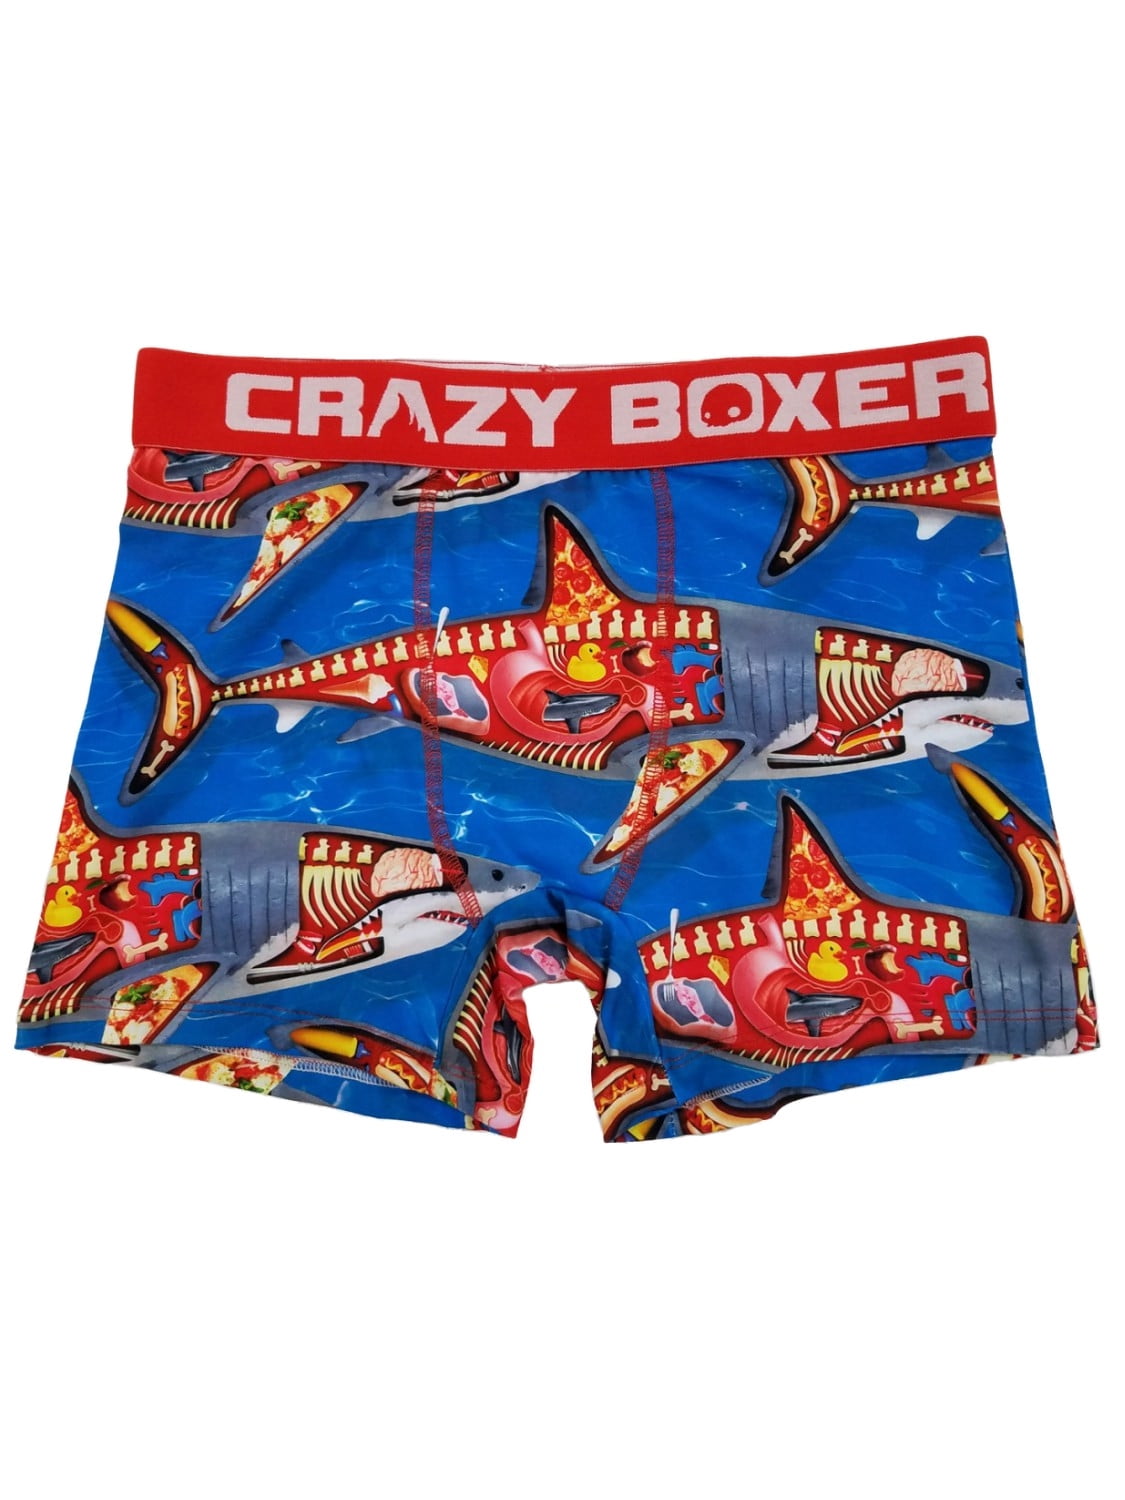 Mens Shark Week Shark Anatomy Novelty Underwear Boxer Briefs Large